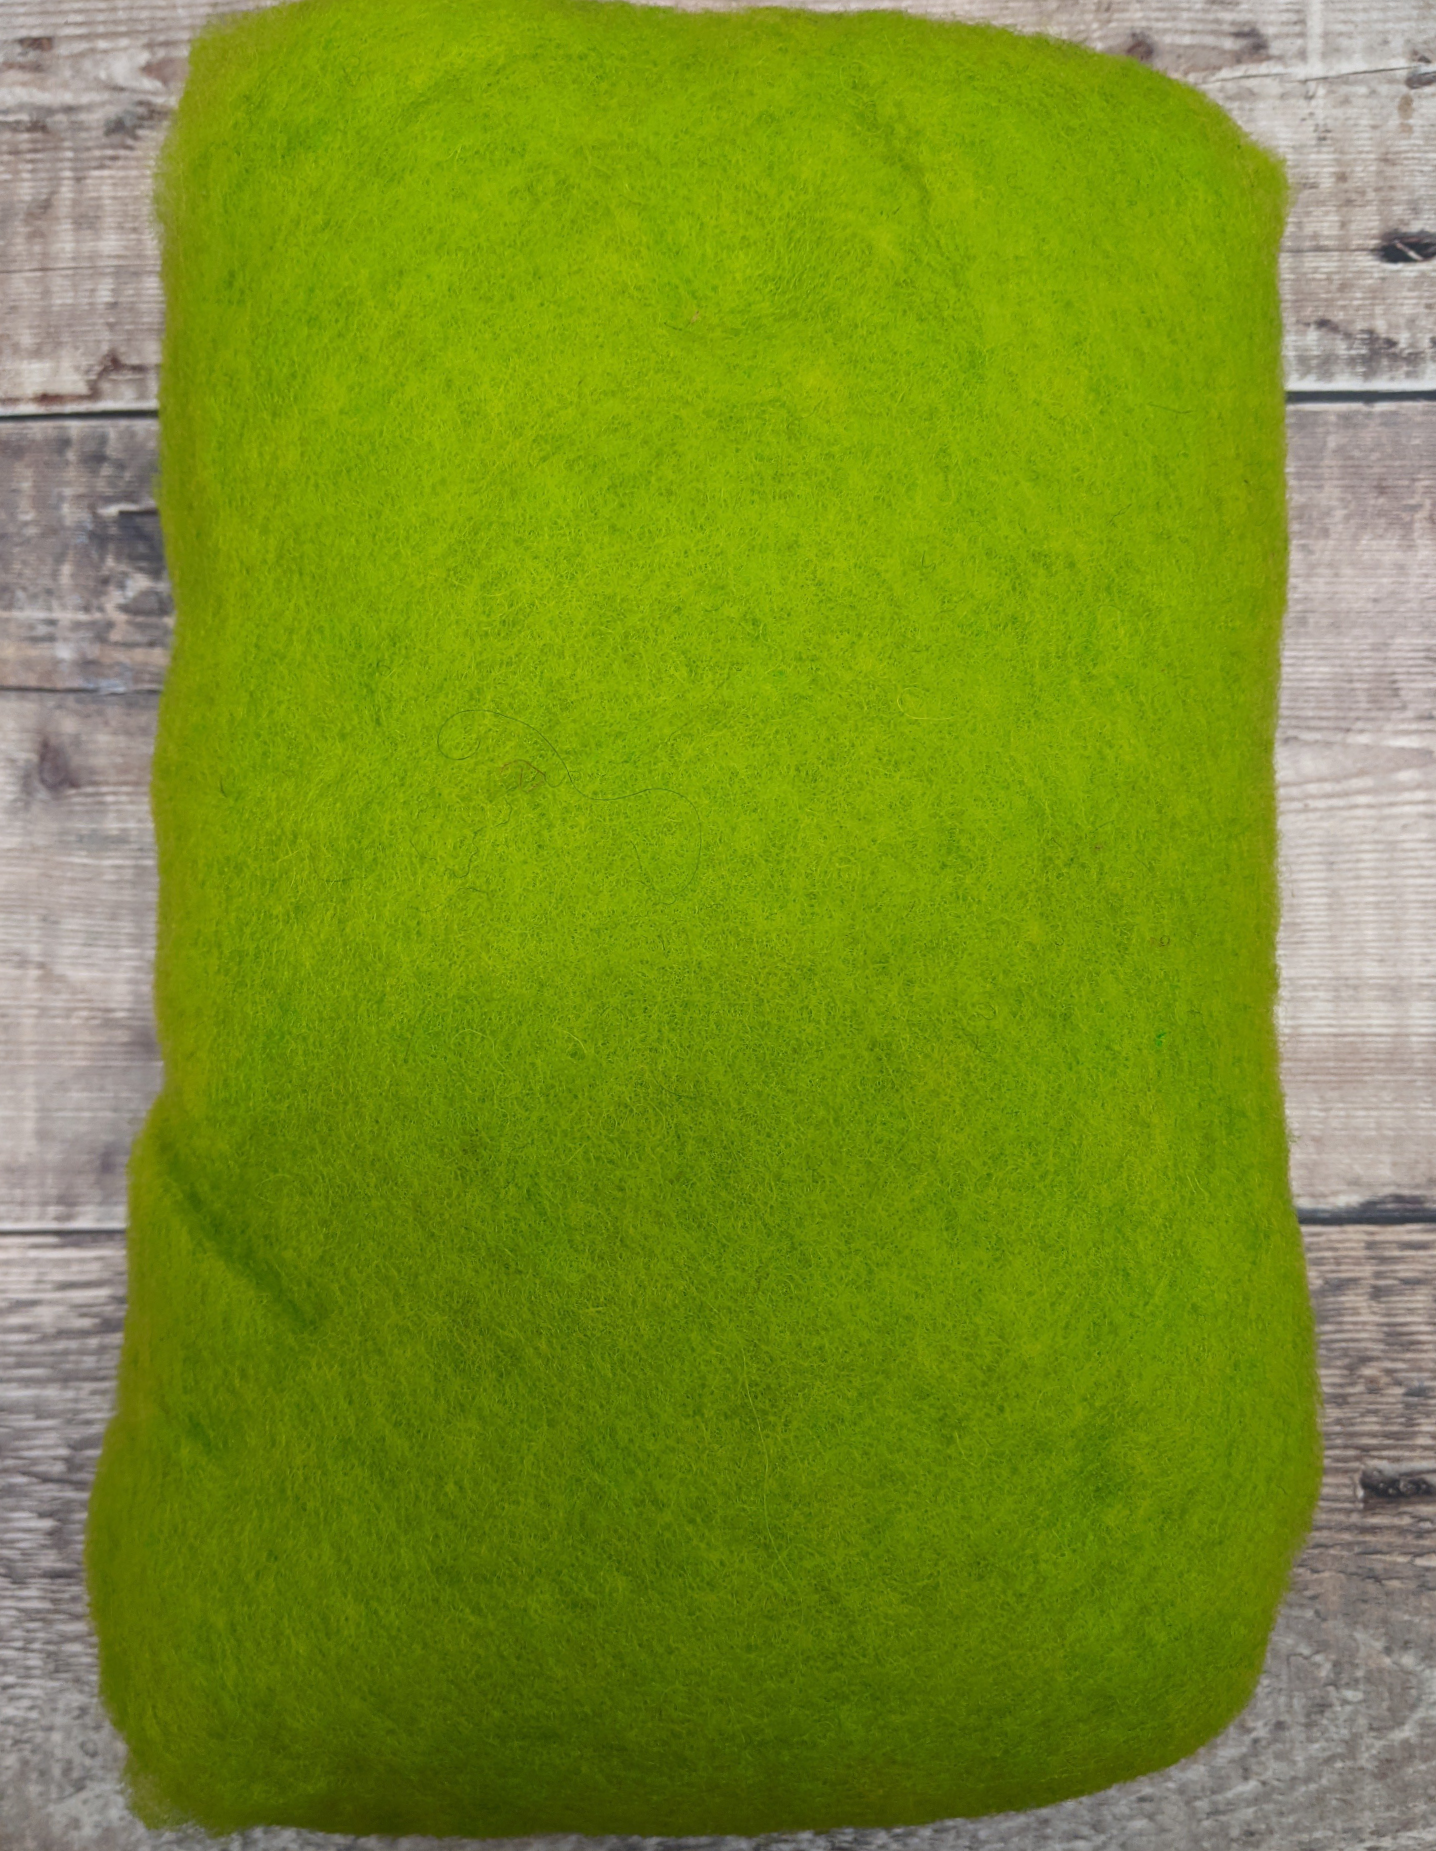 Mixed Scandinavian blend Carded large Wool Batt 100g Bright Apple Green